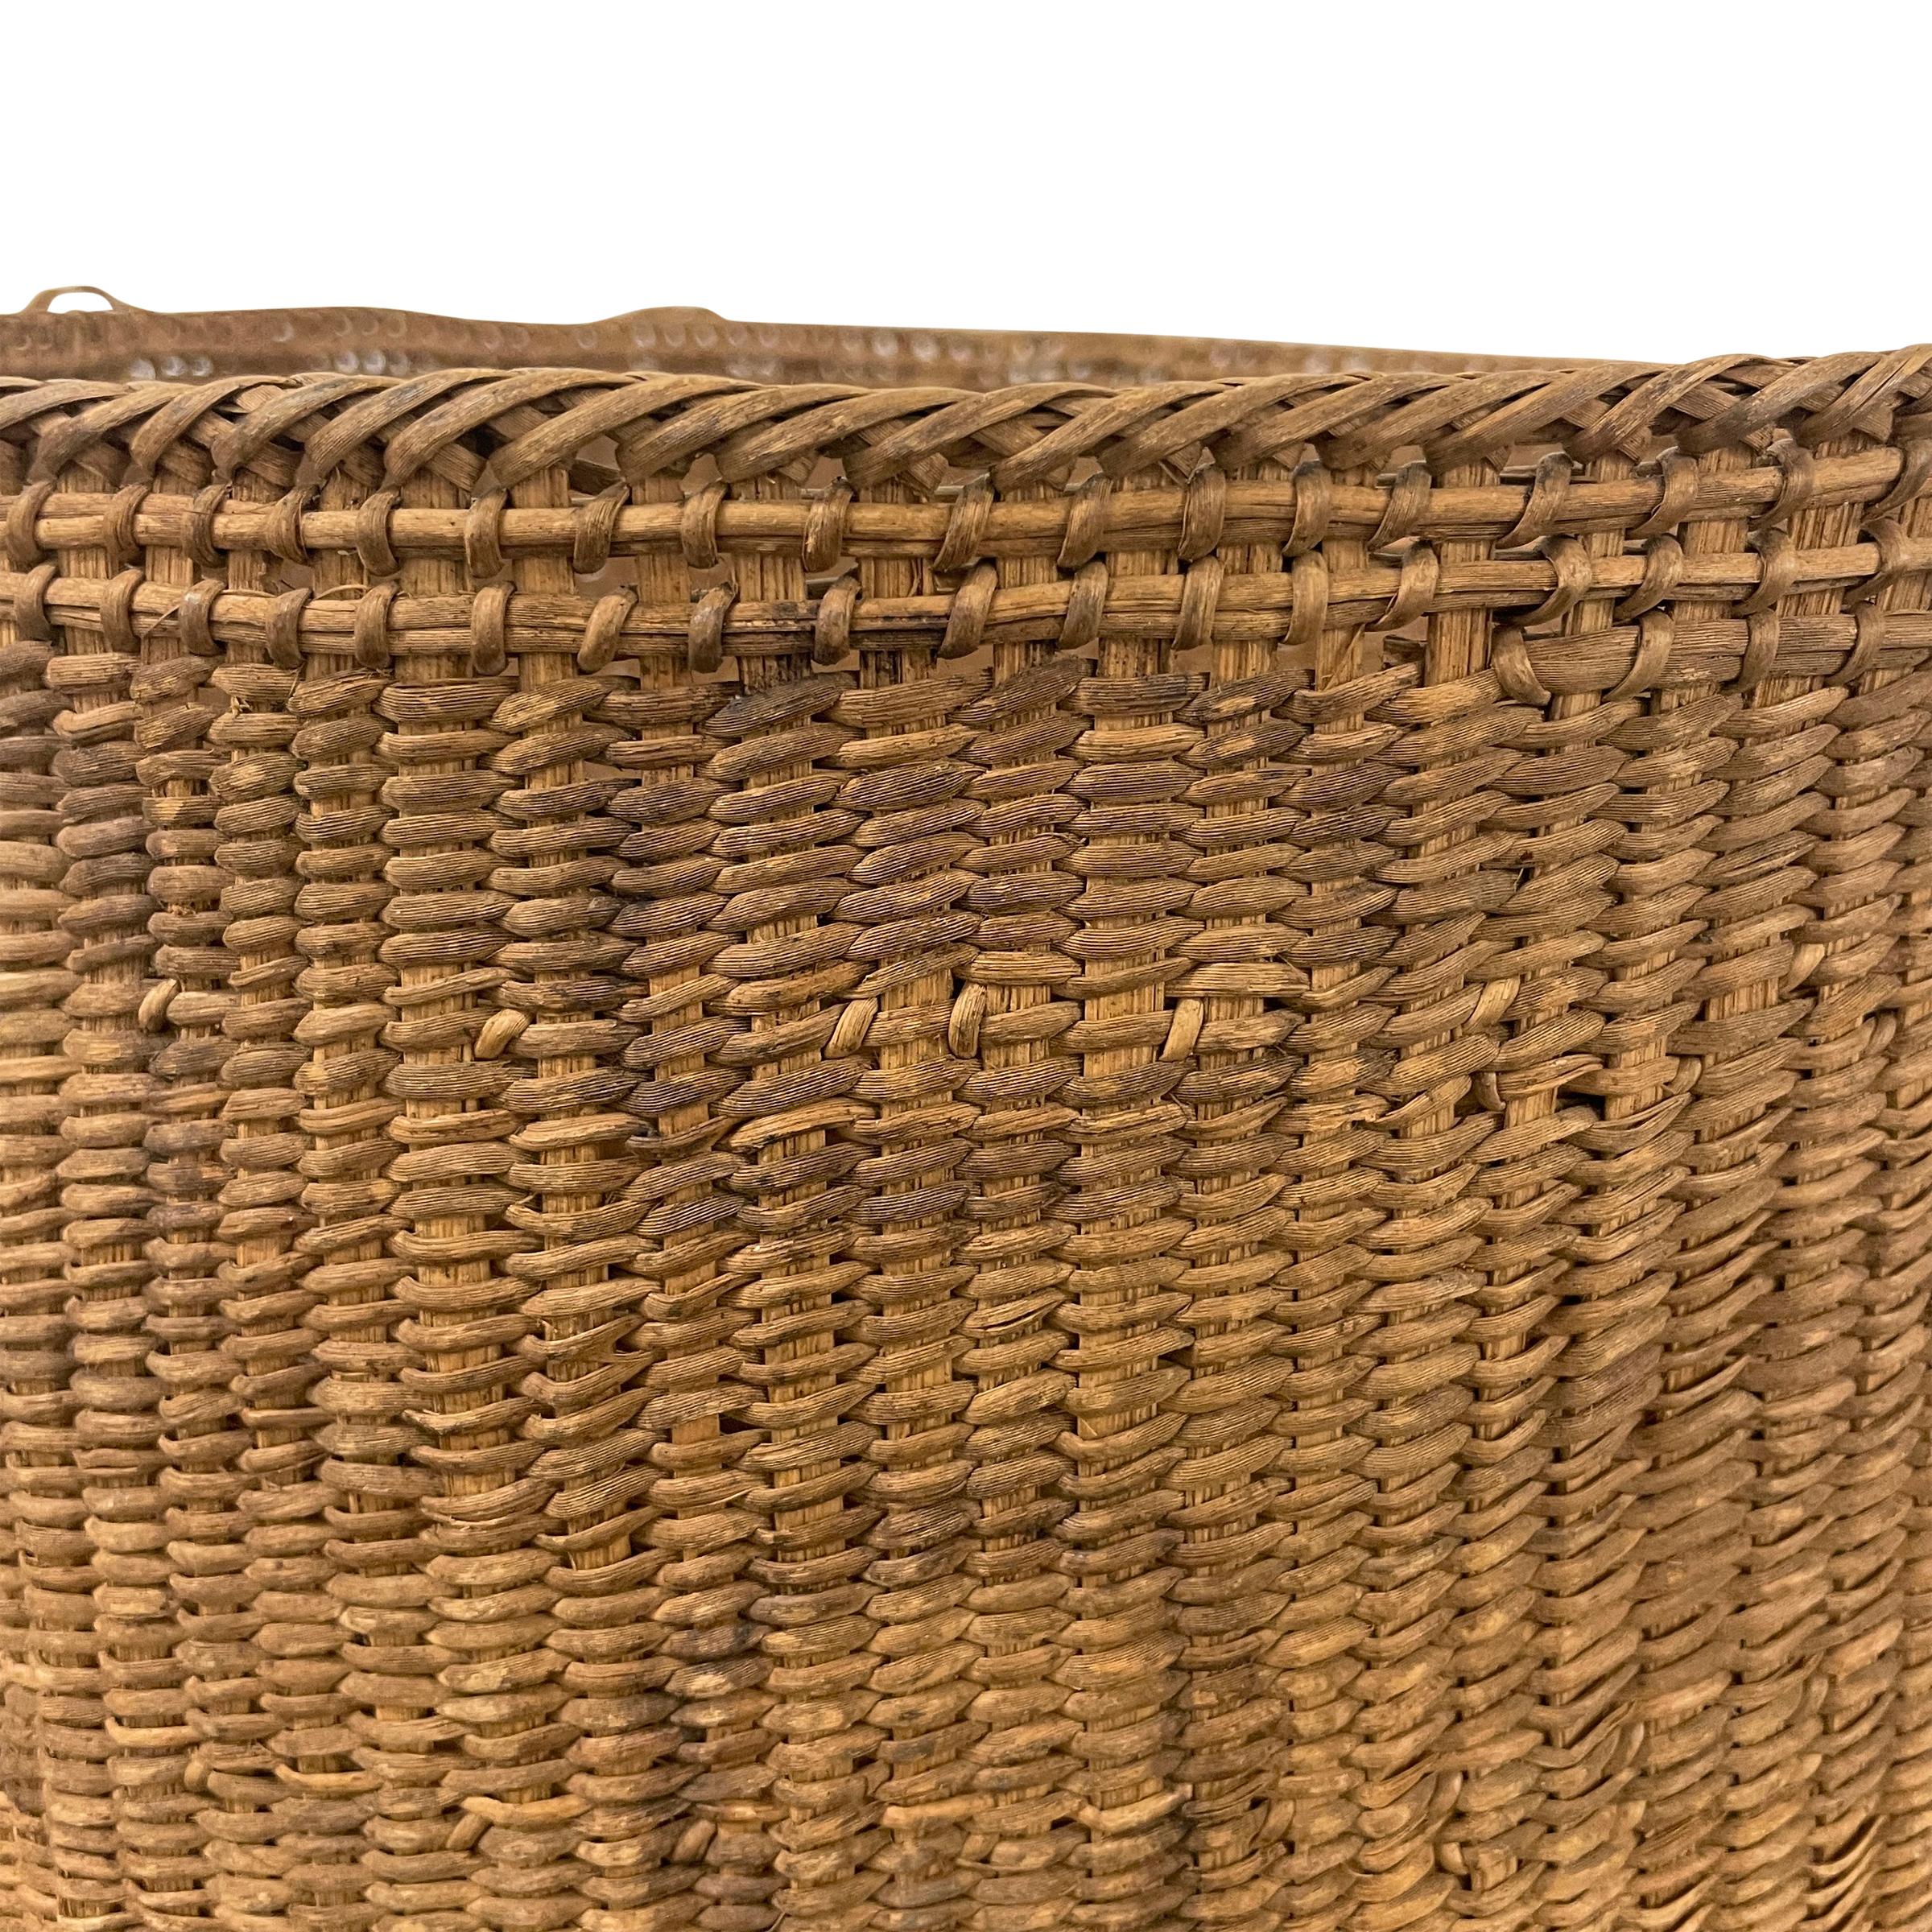 Natural Fiber Yanomami Gathering Basket